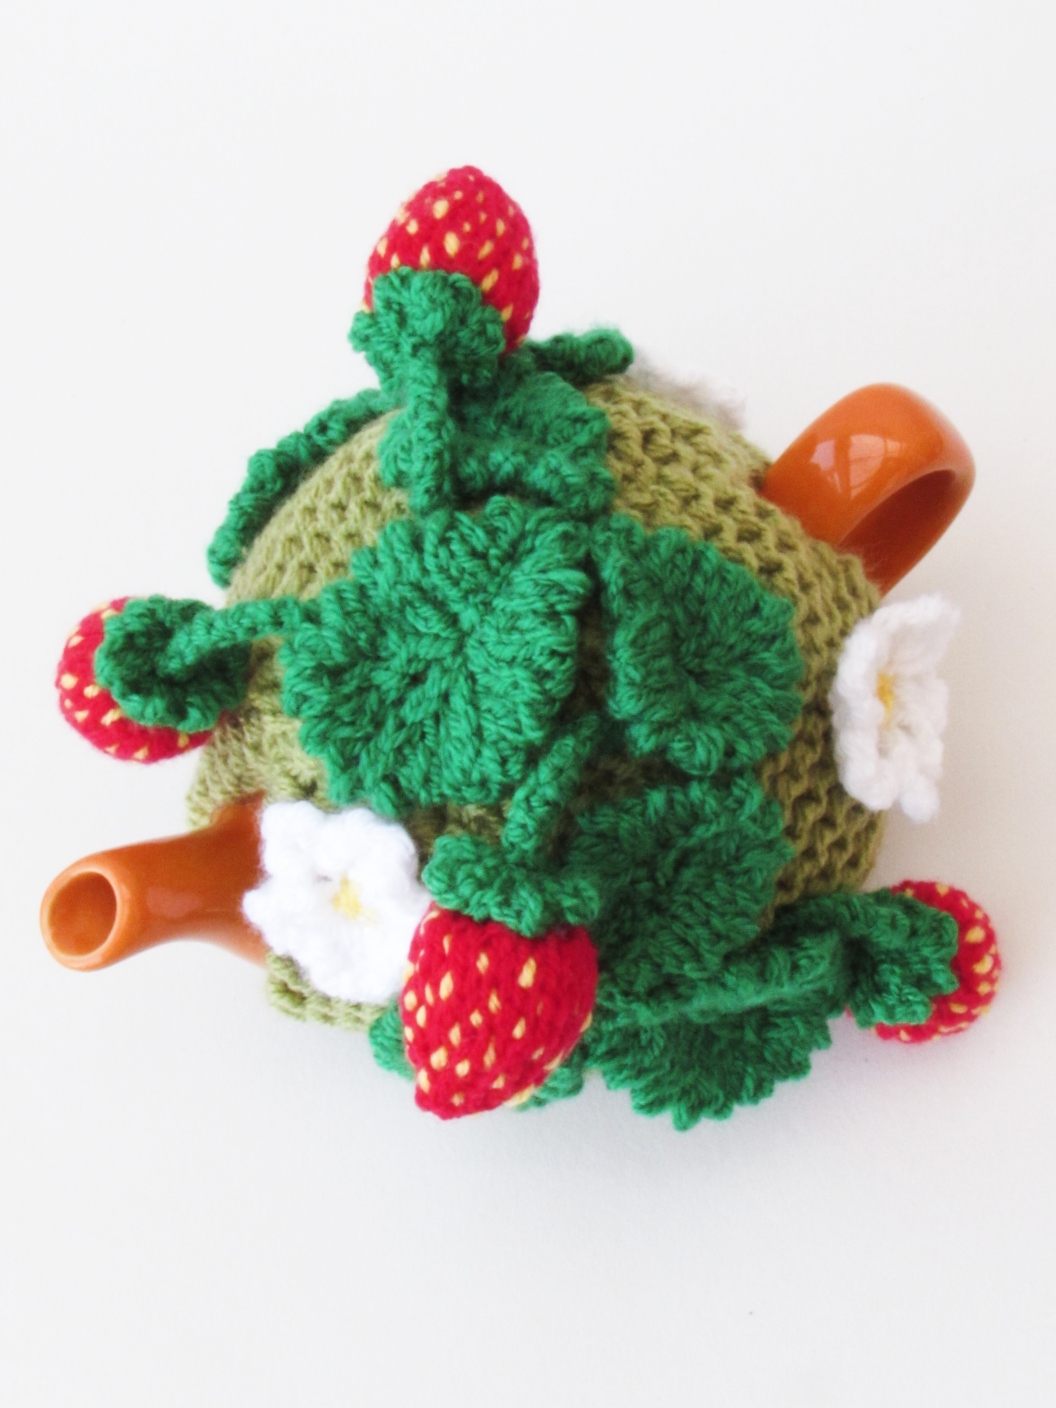 Mini Sized Strawberry Patch knitting pattern